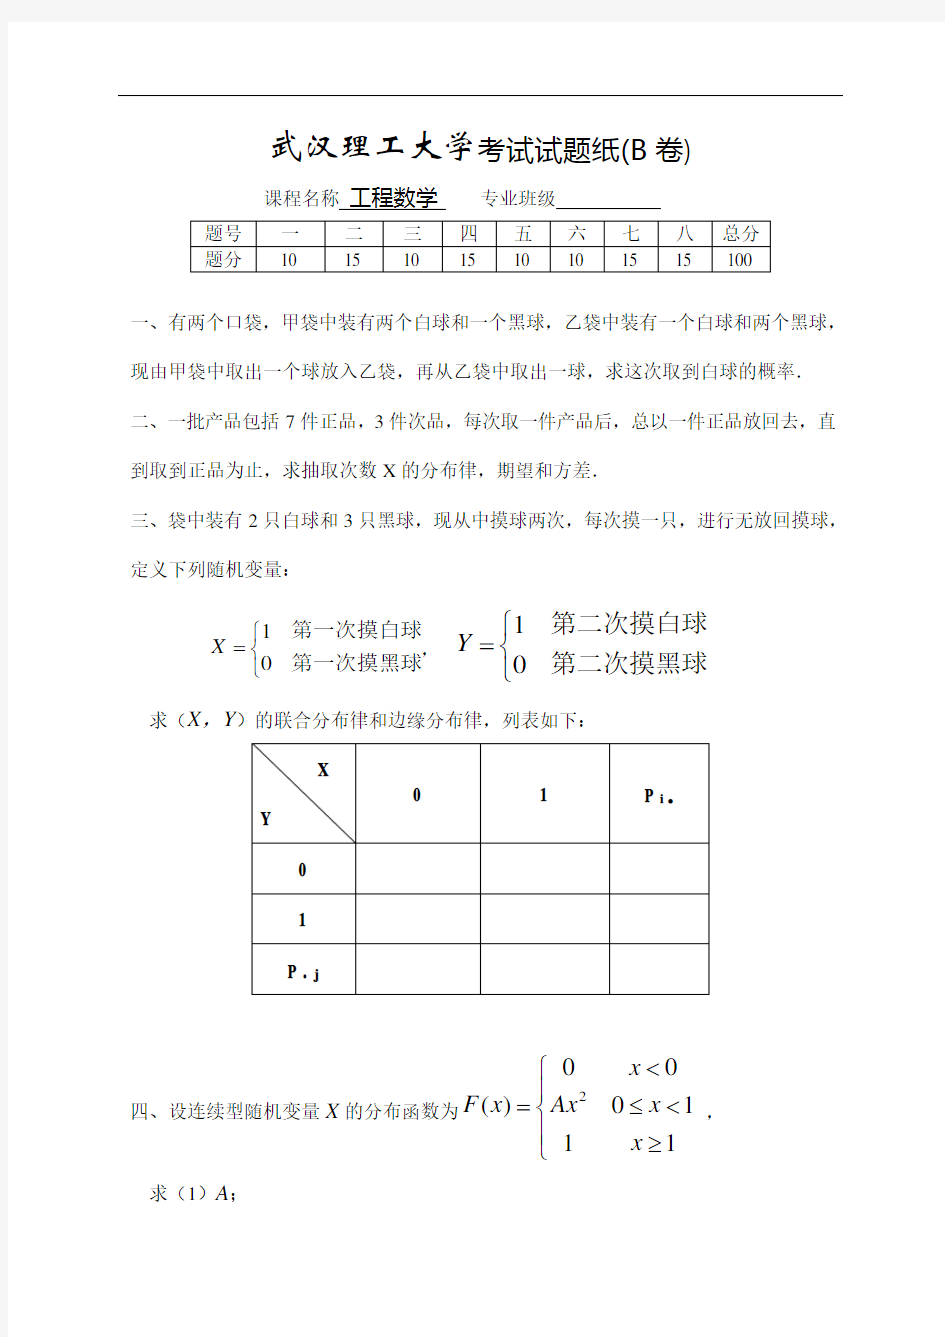 武汉理工大学考试试题纸(B卷)